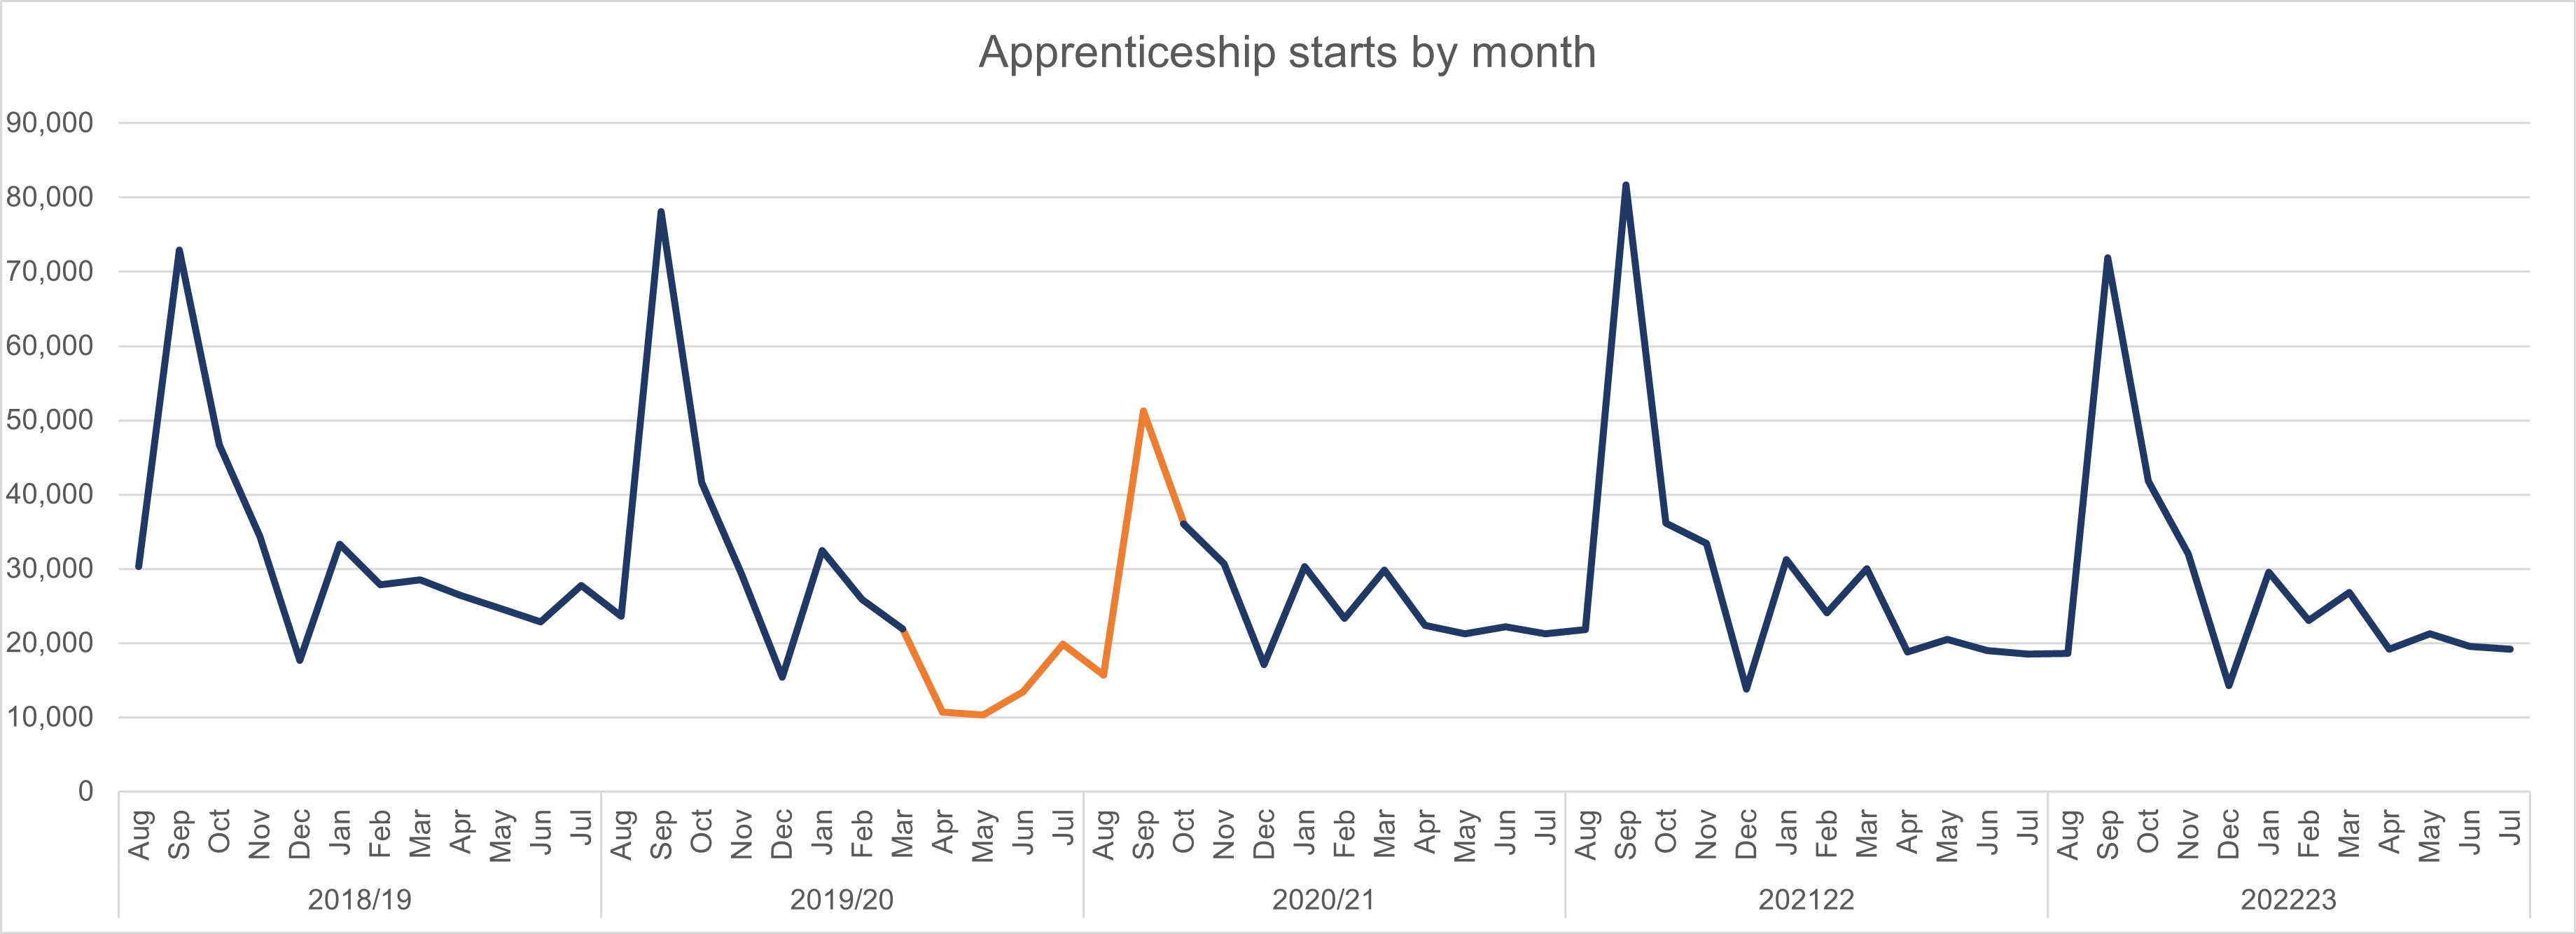 Apprenticeship starts by month